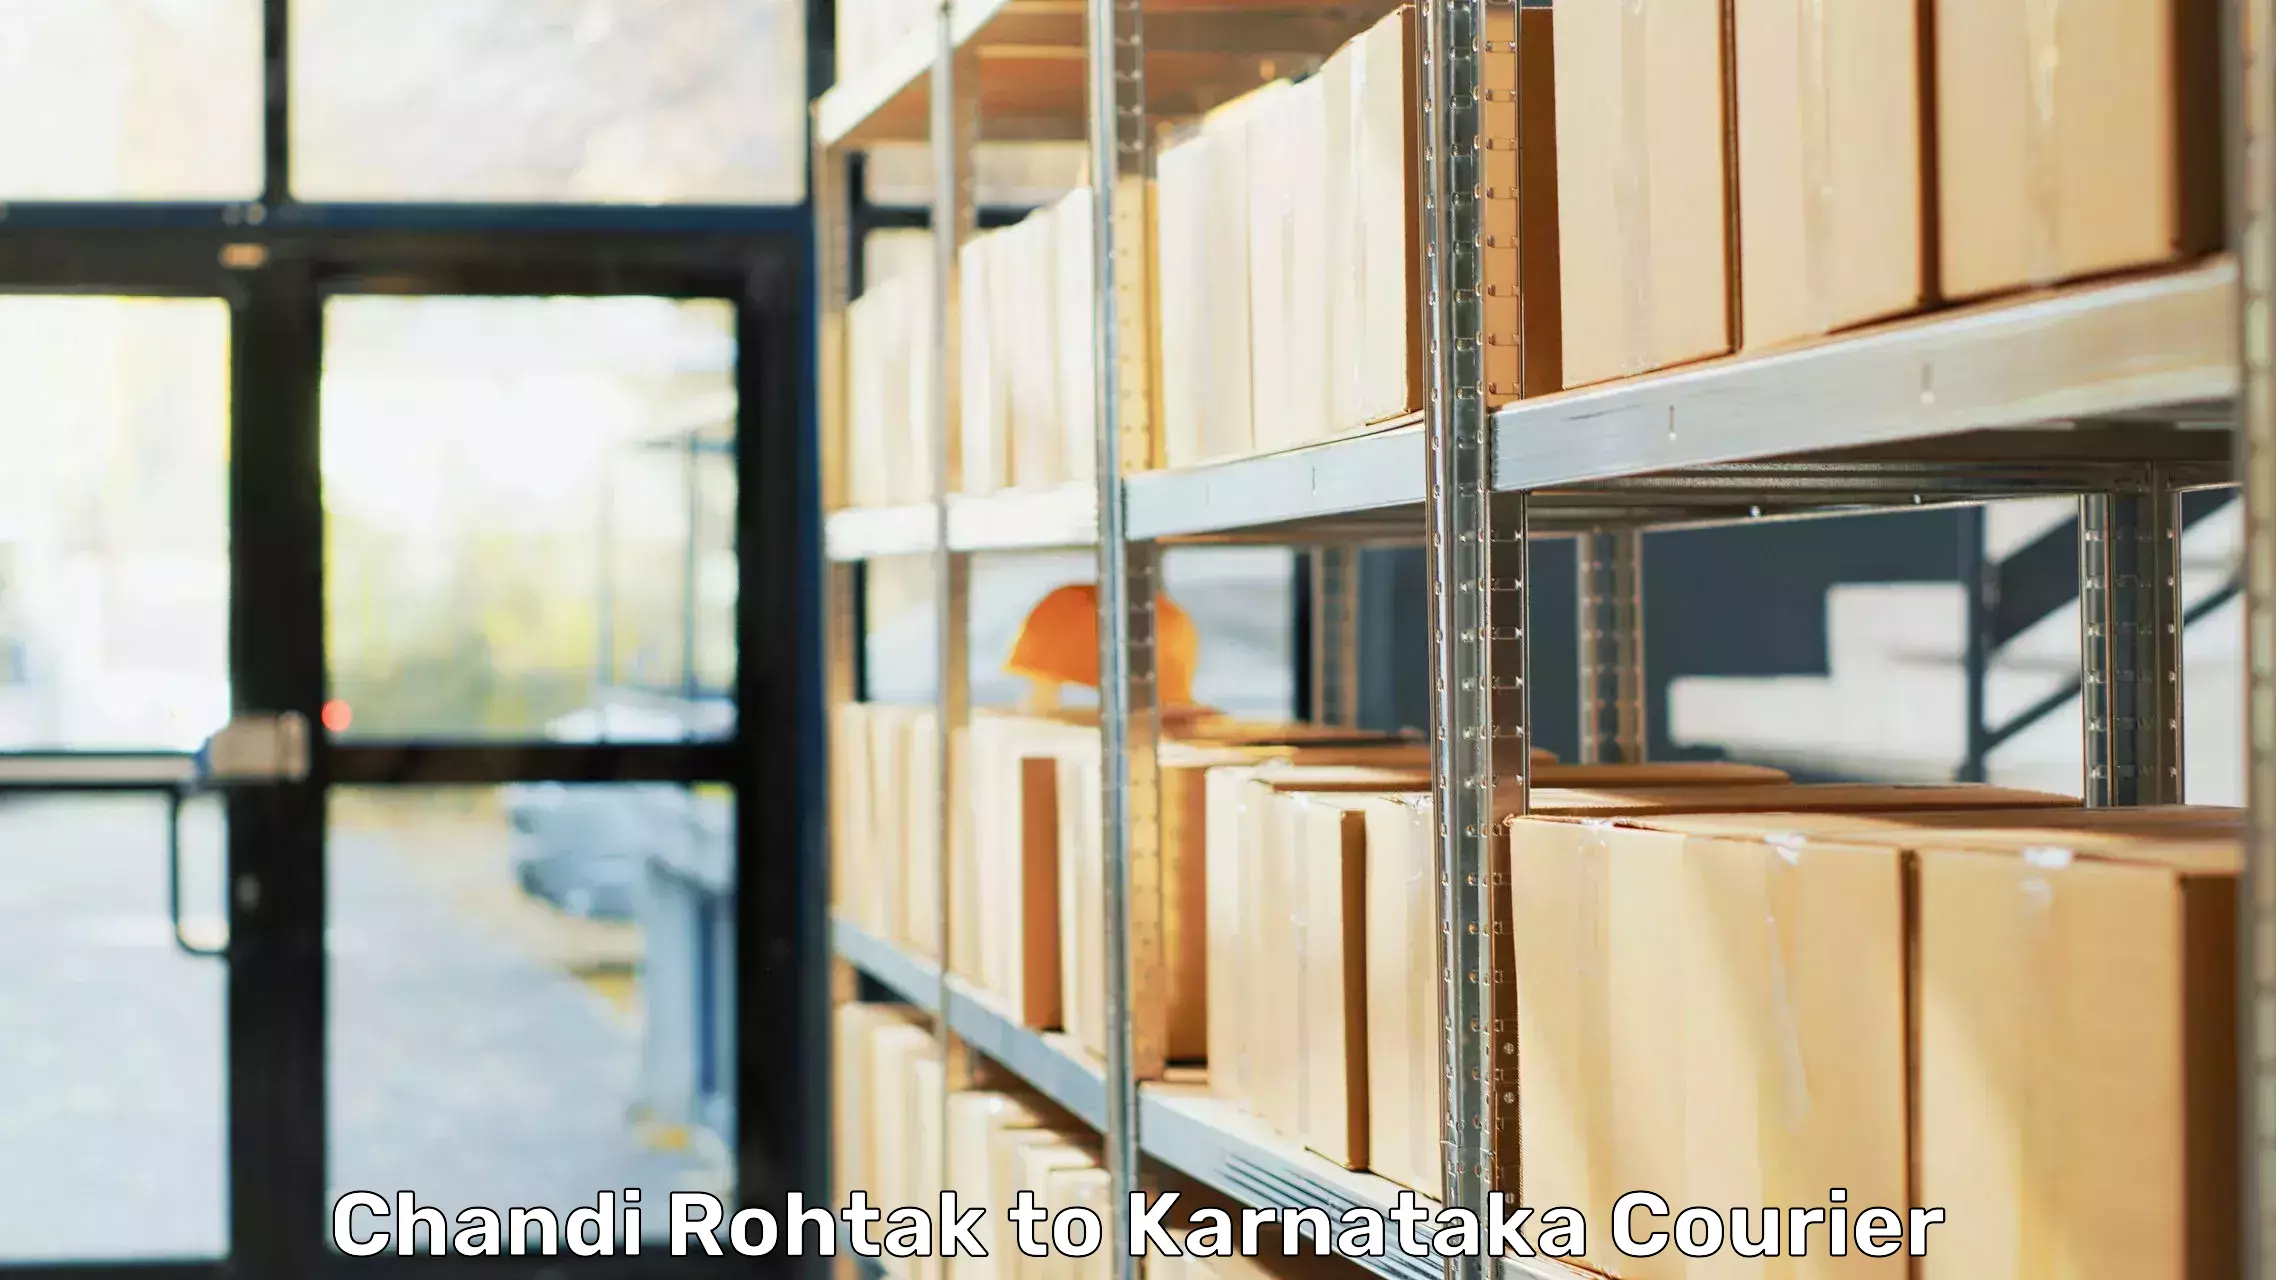 Professional movers and packers Chandi Rohtak to Karnataka